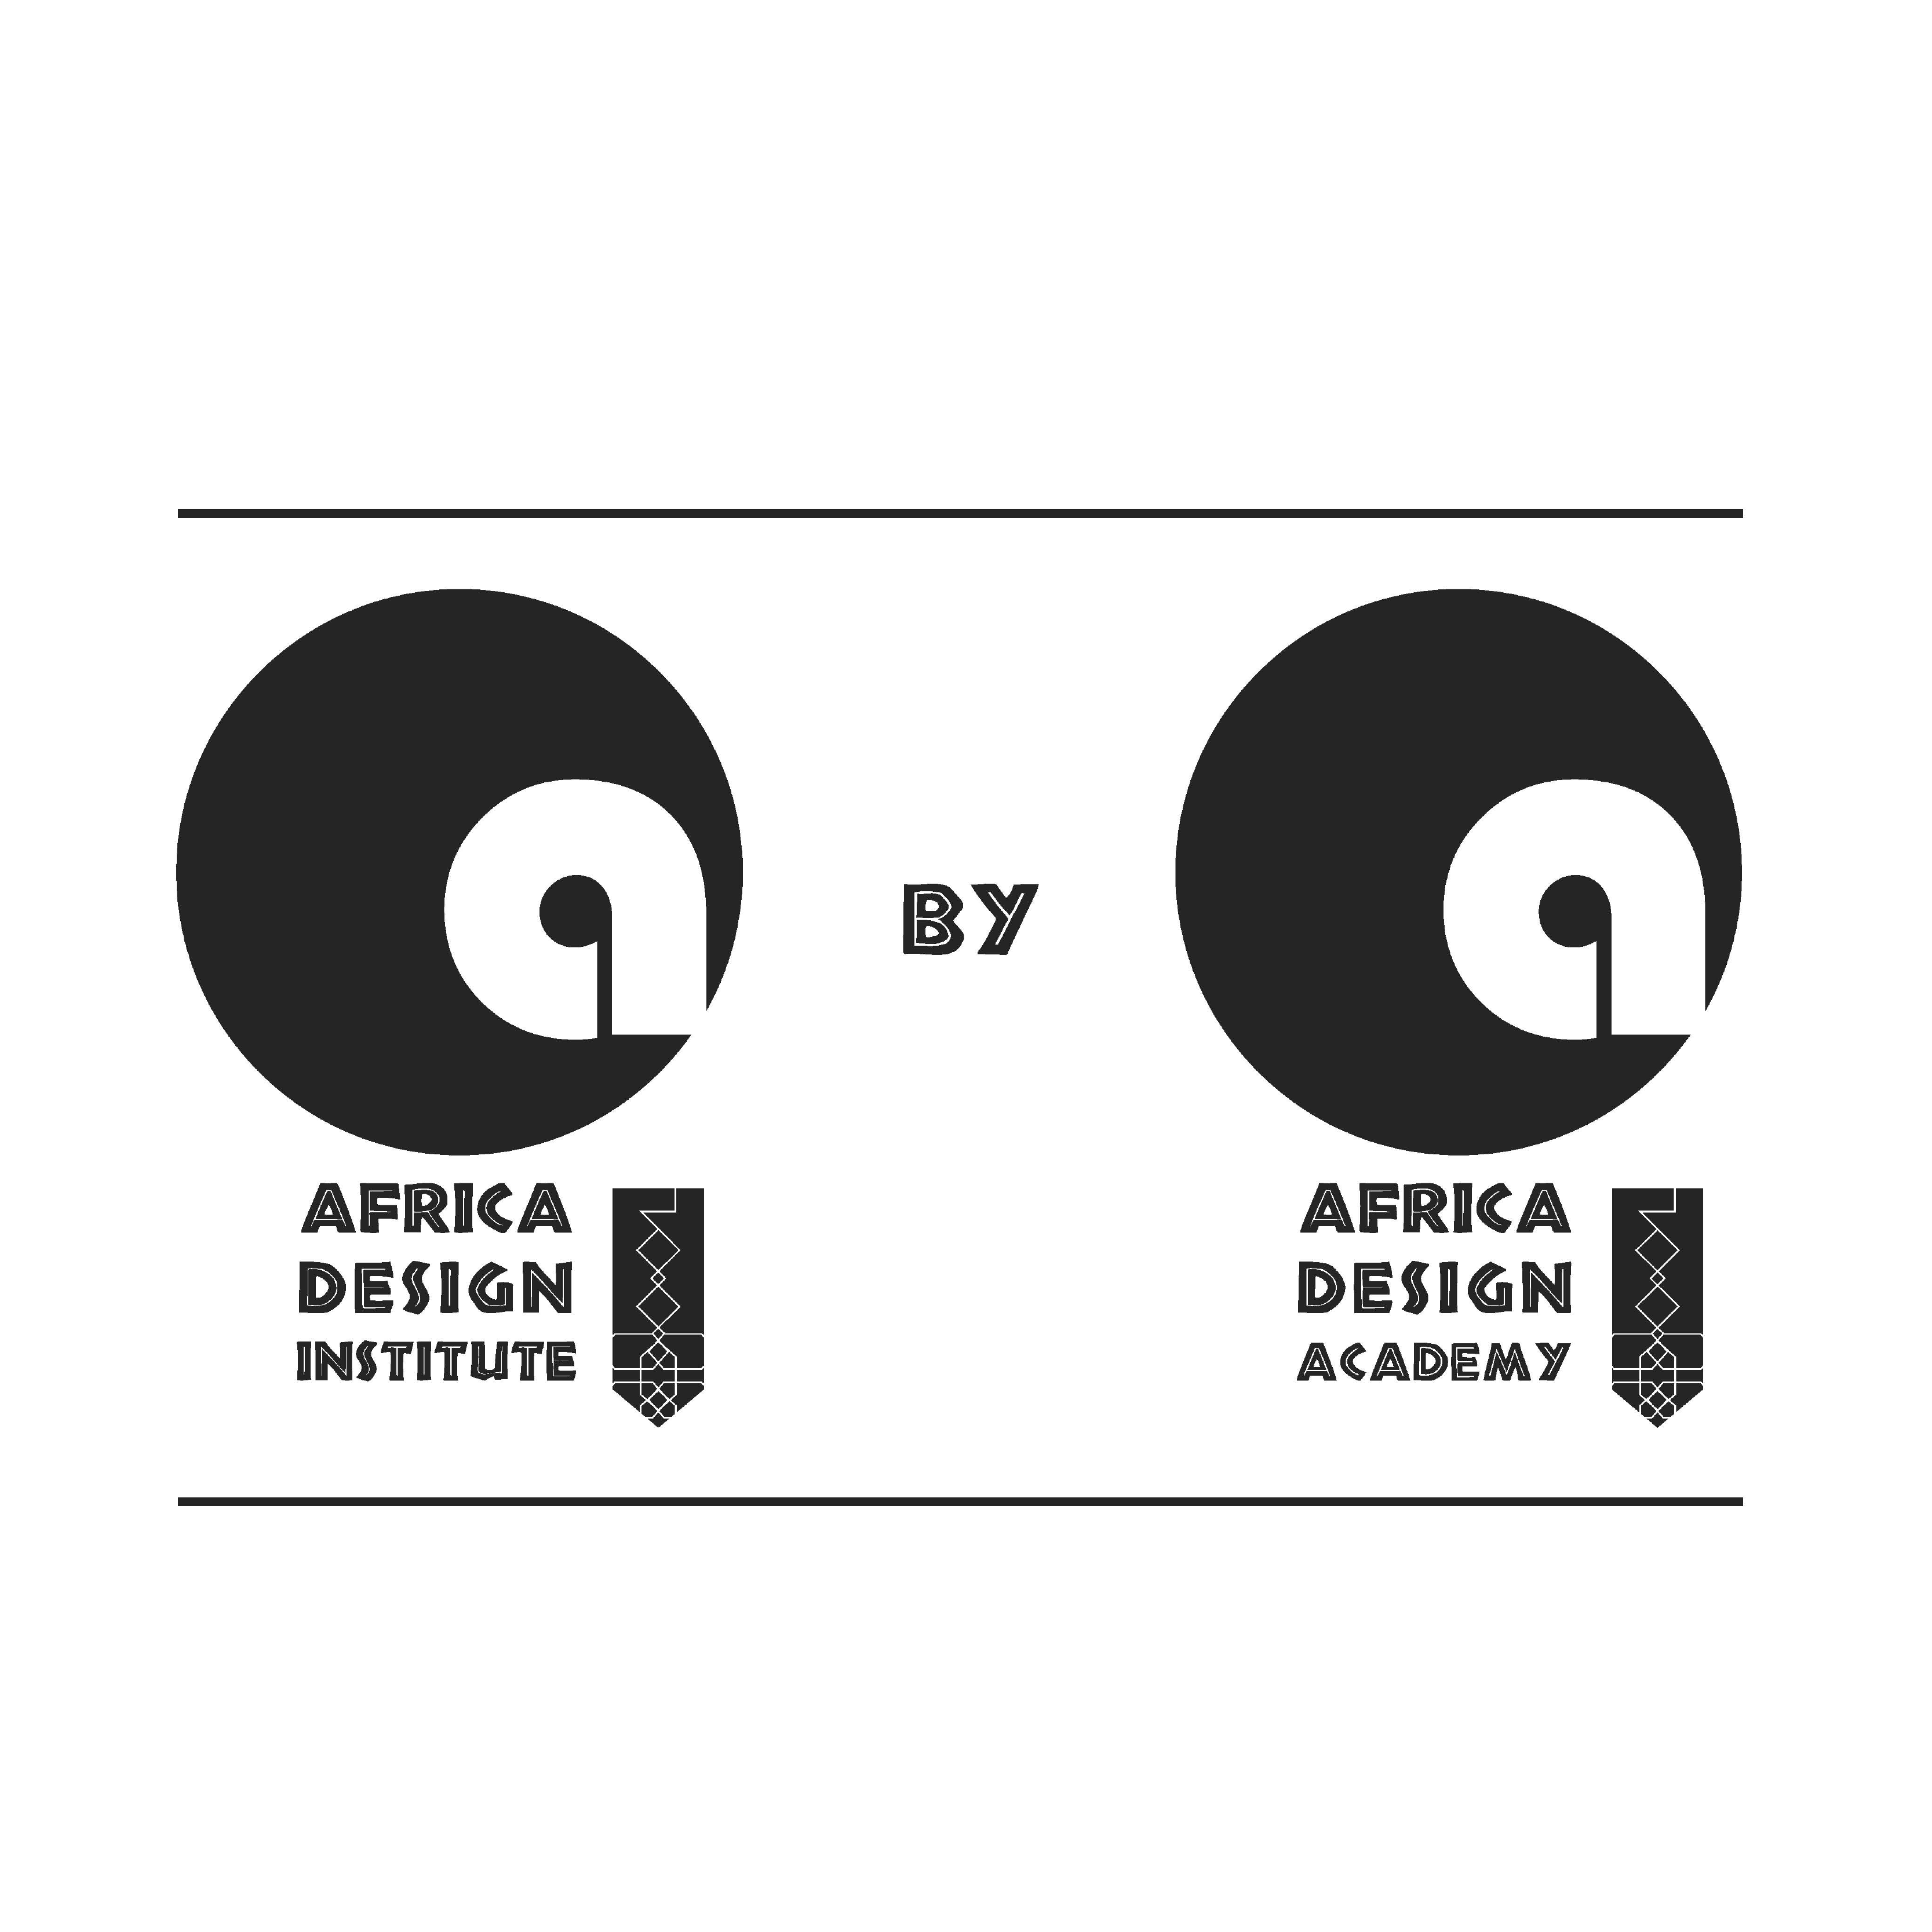 Africa Design Institute & Africa Design Academy Logo